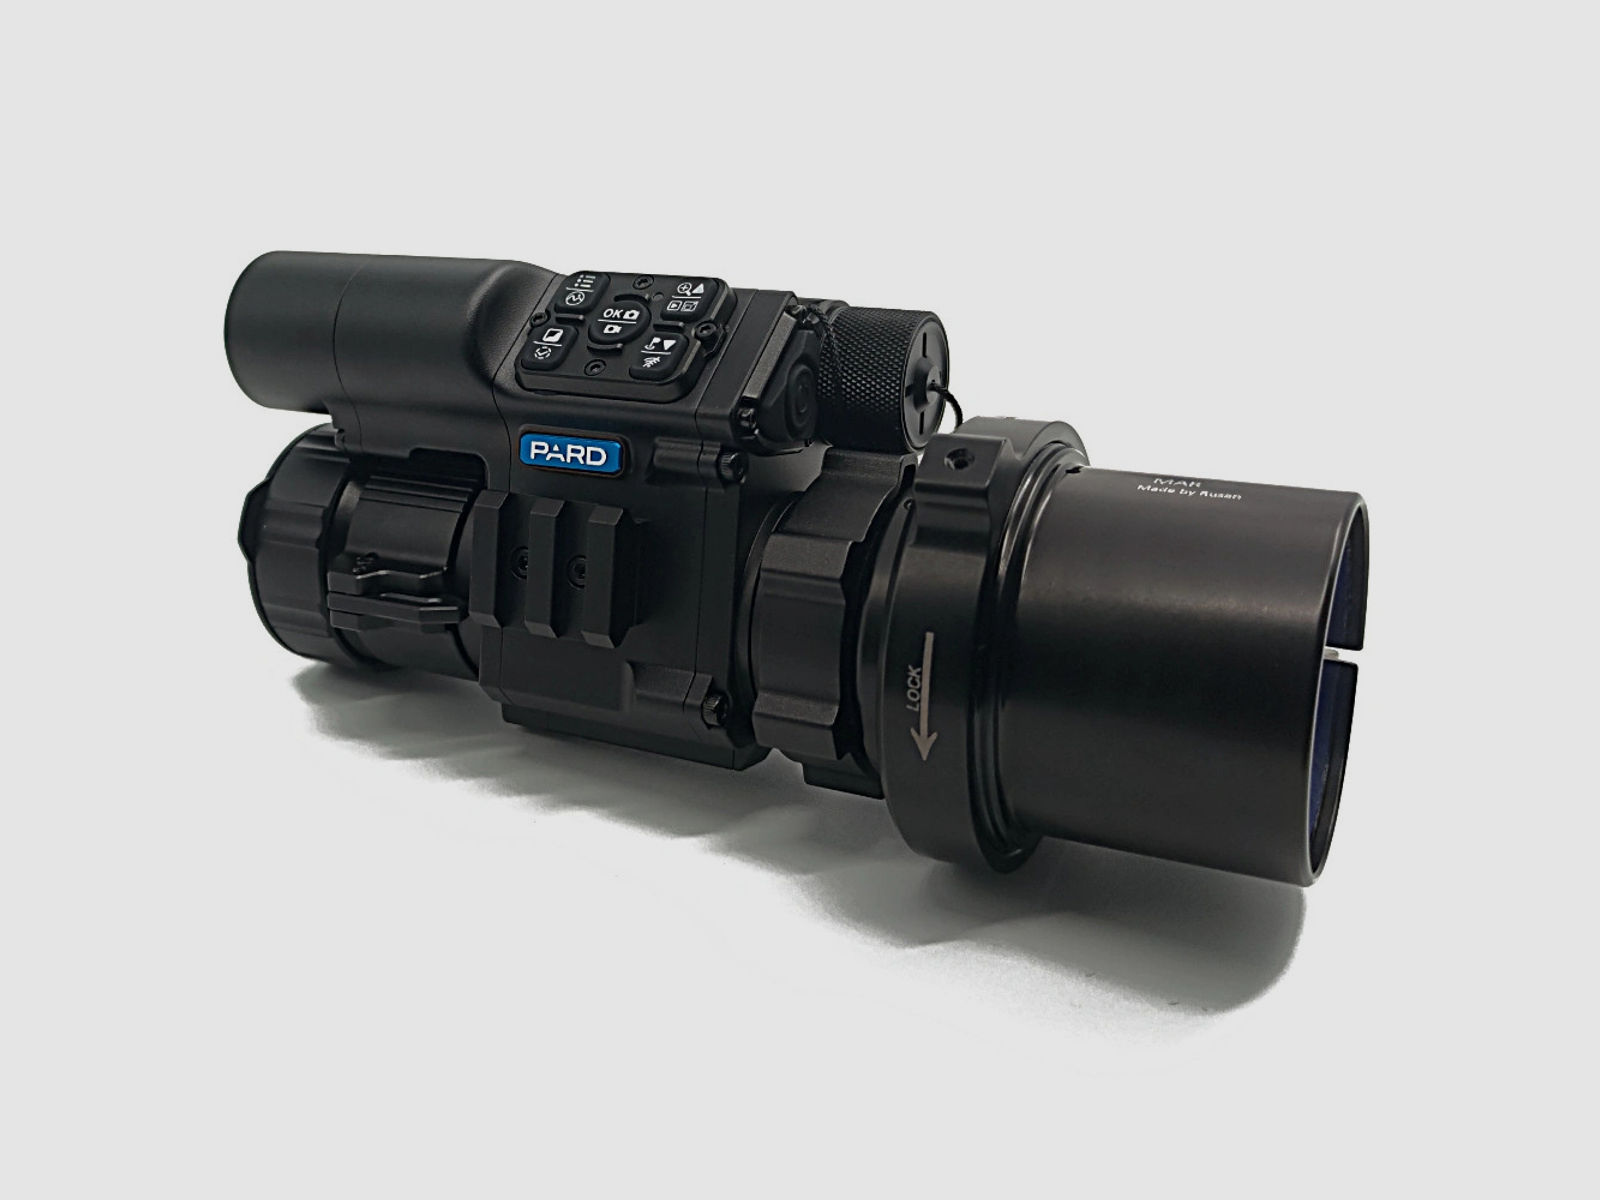 PARD FD1 Nachtsicht 3 in 1 Vorsatz, Monokular & Zielfernrohr - 940 nm mit LRF 56 mm RUSAN MAR + RUSAN MCR